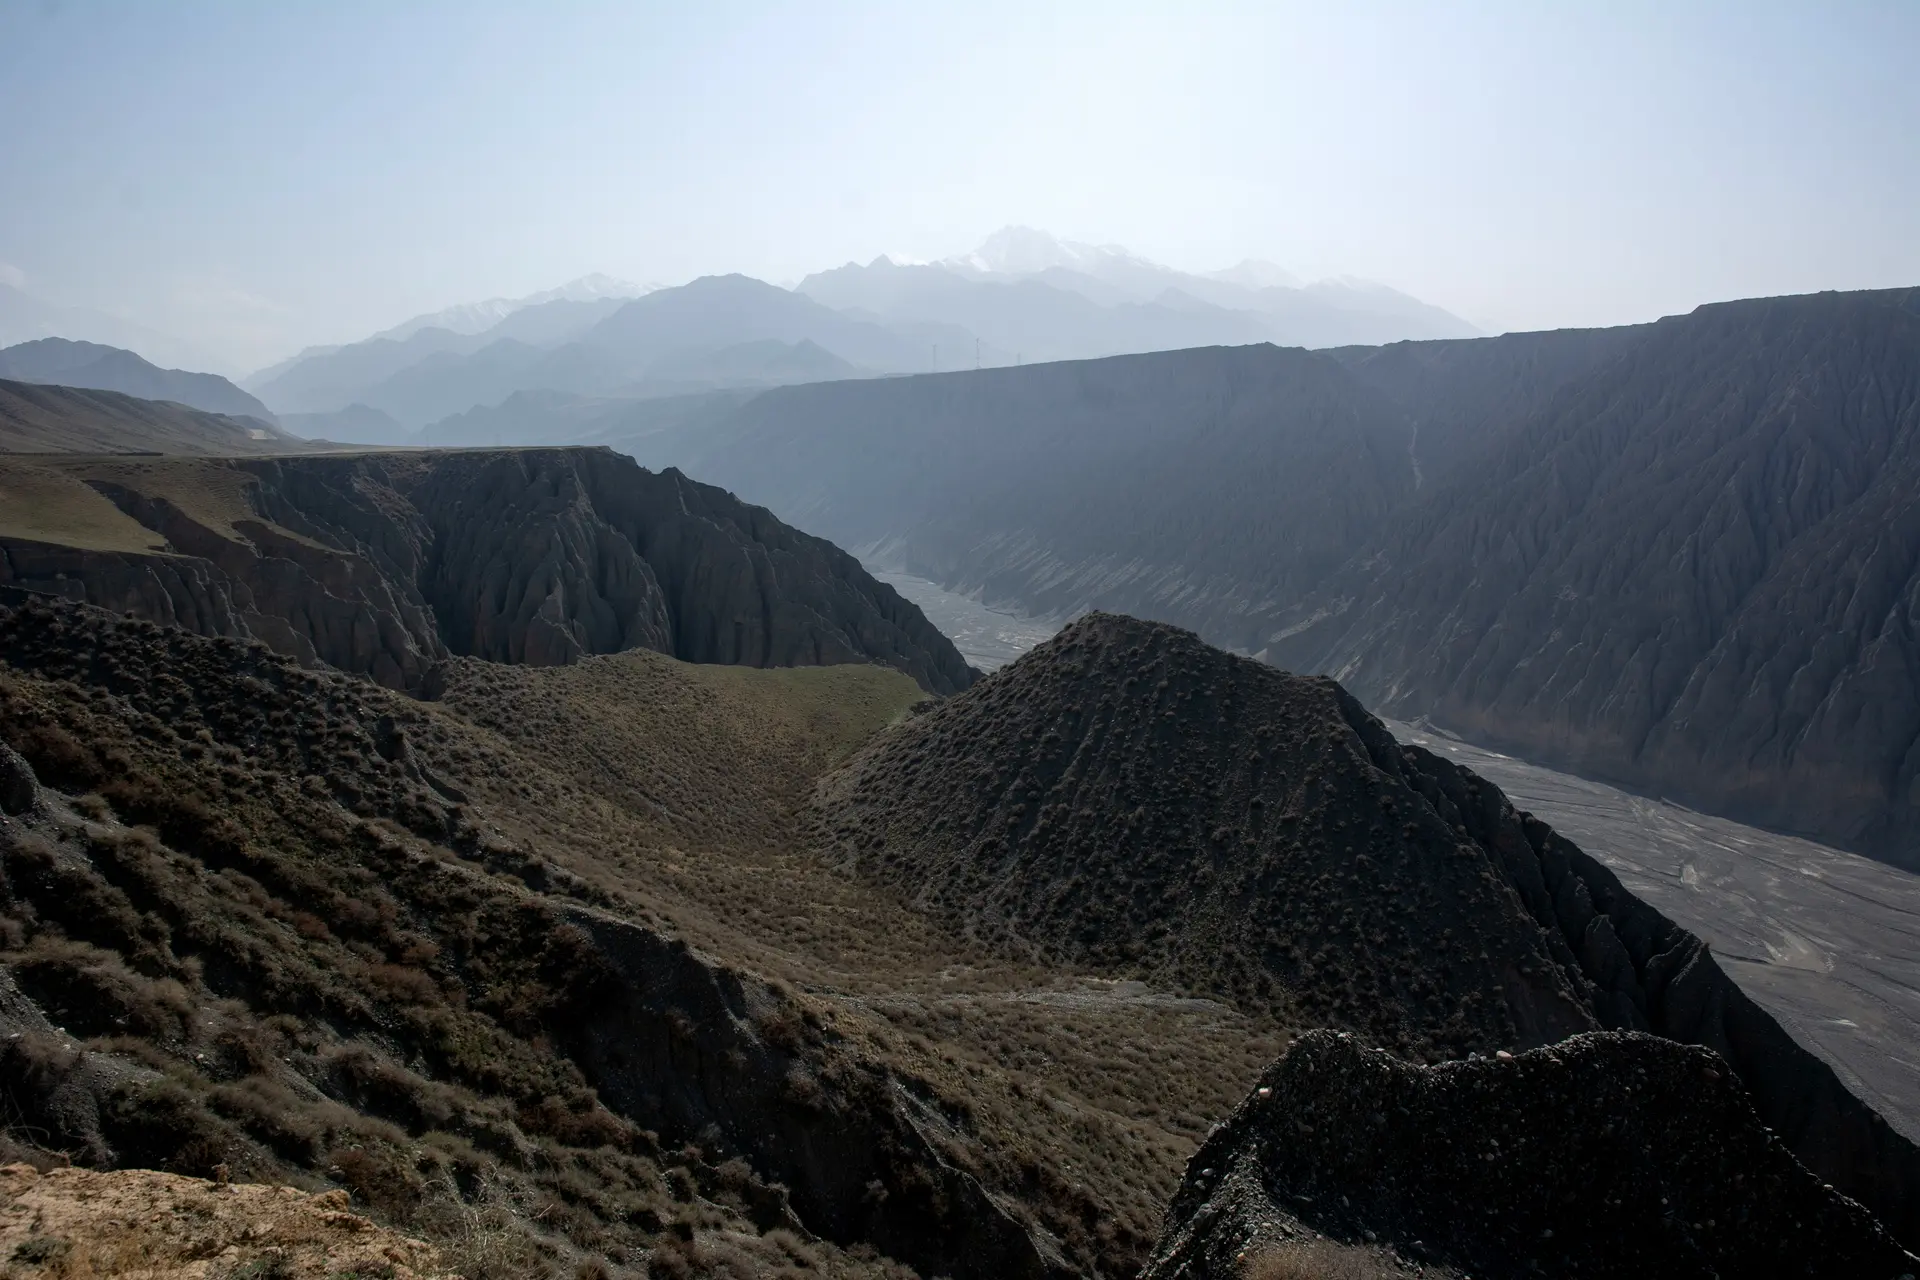 独山子大峡谷——壮丽绝伦的自然之美（共2135字）